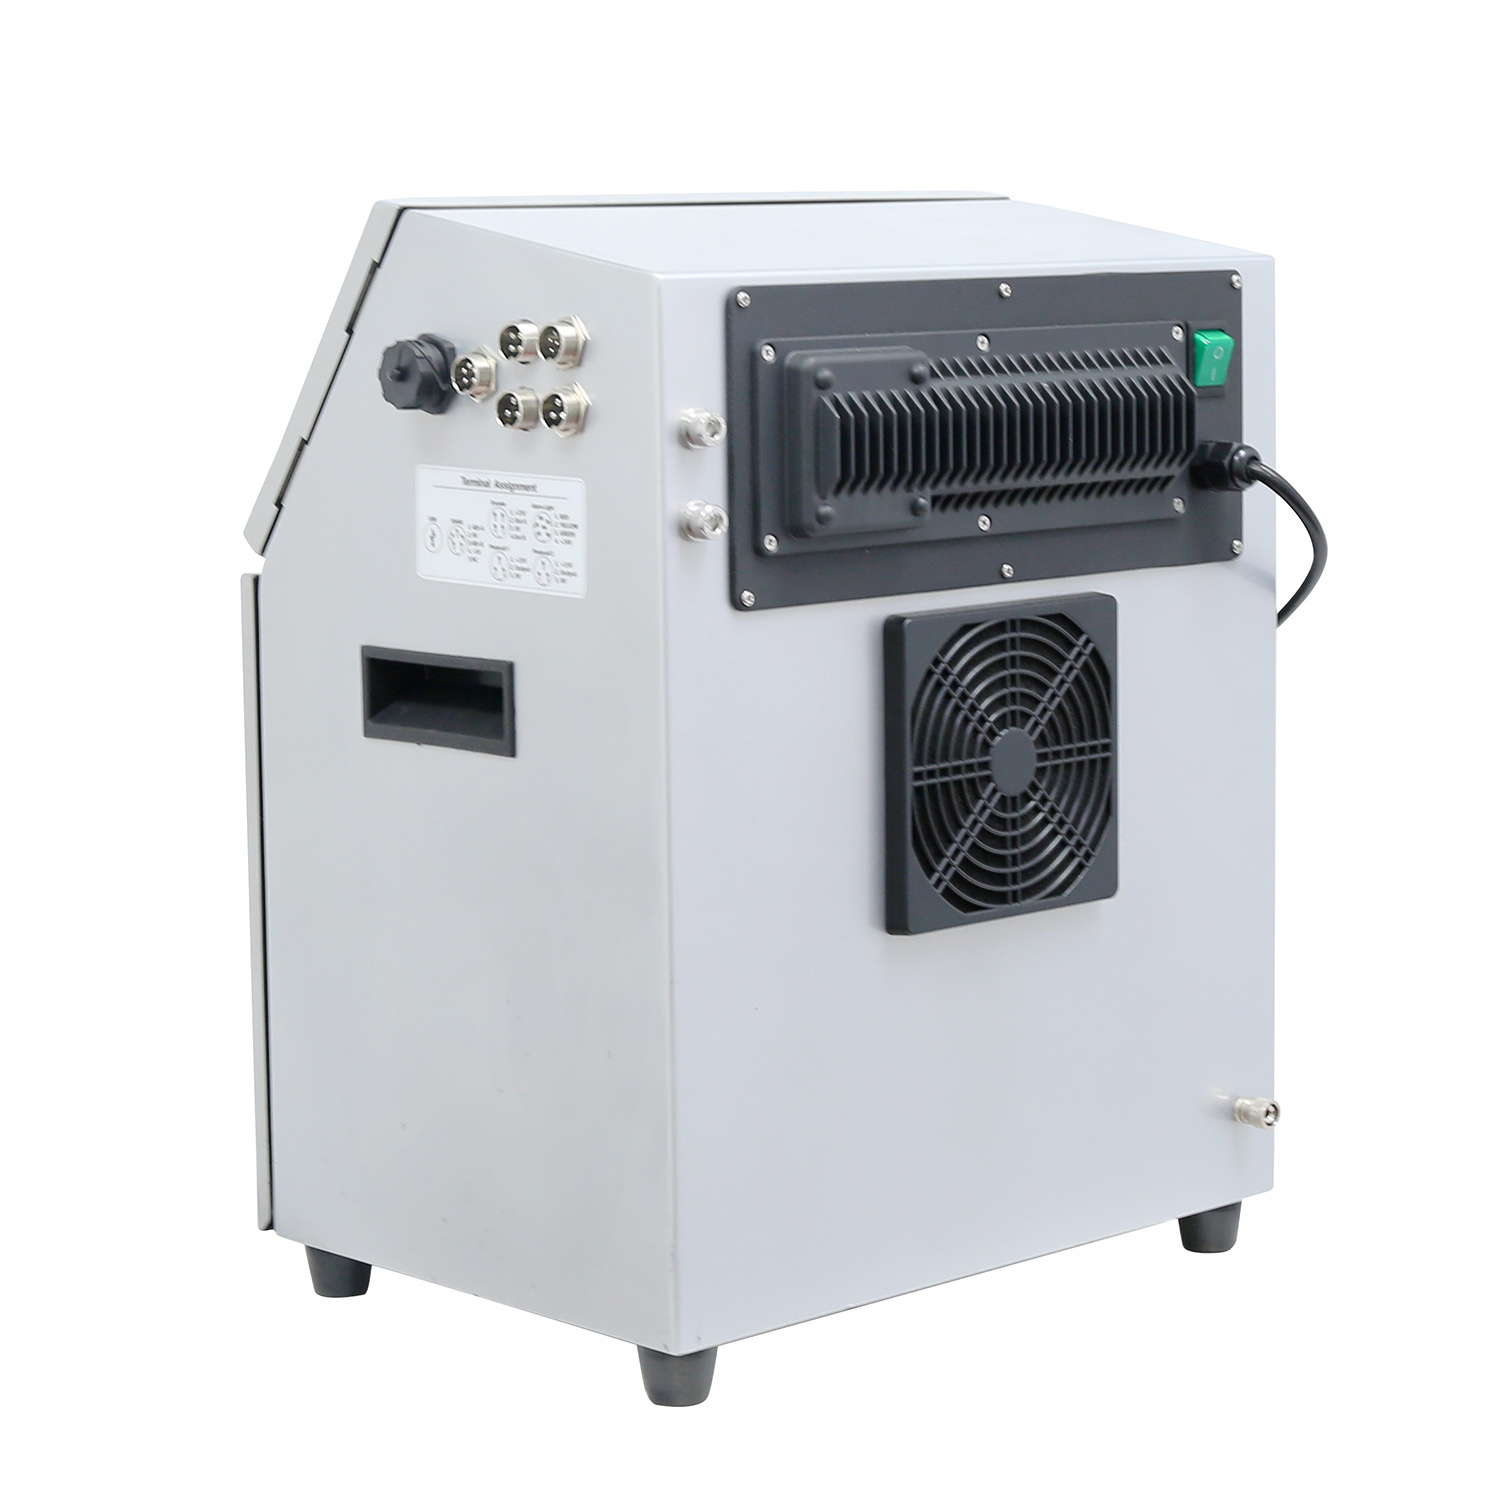 Leadtech Lt800 Cij Inkjet Printer for Bar Printing